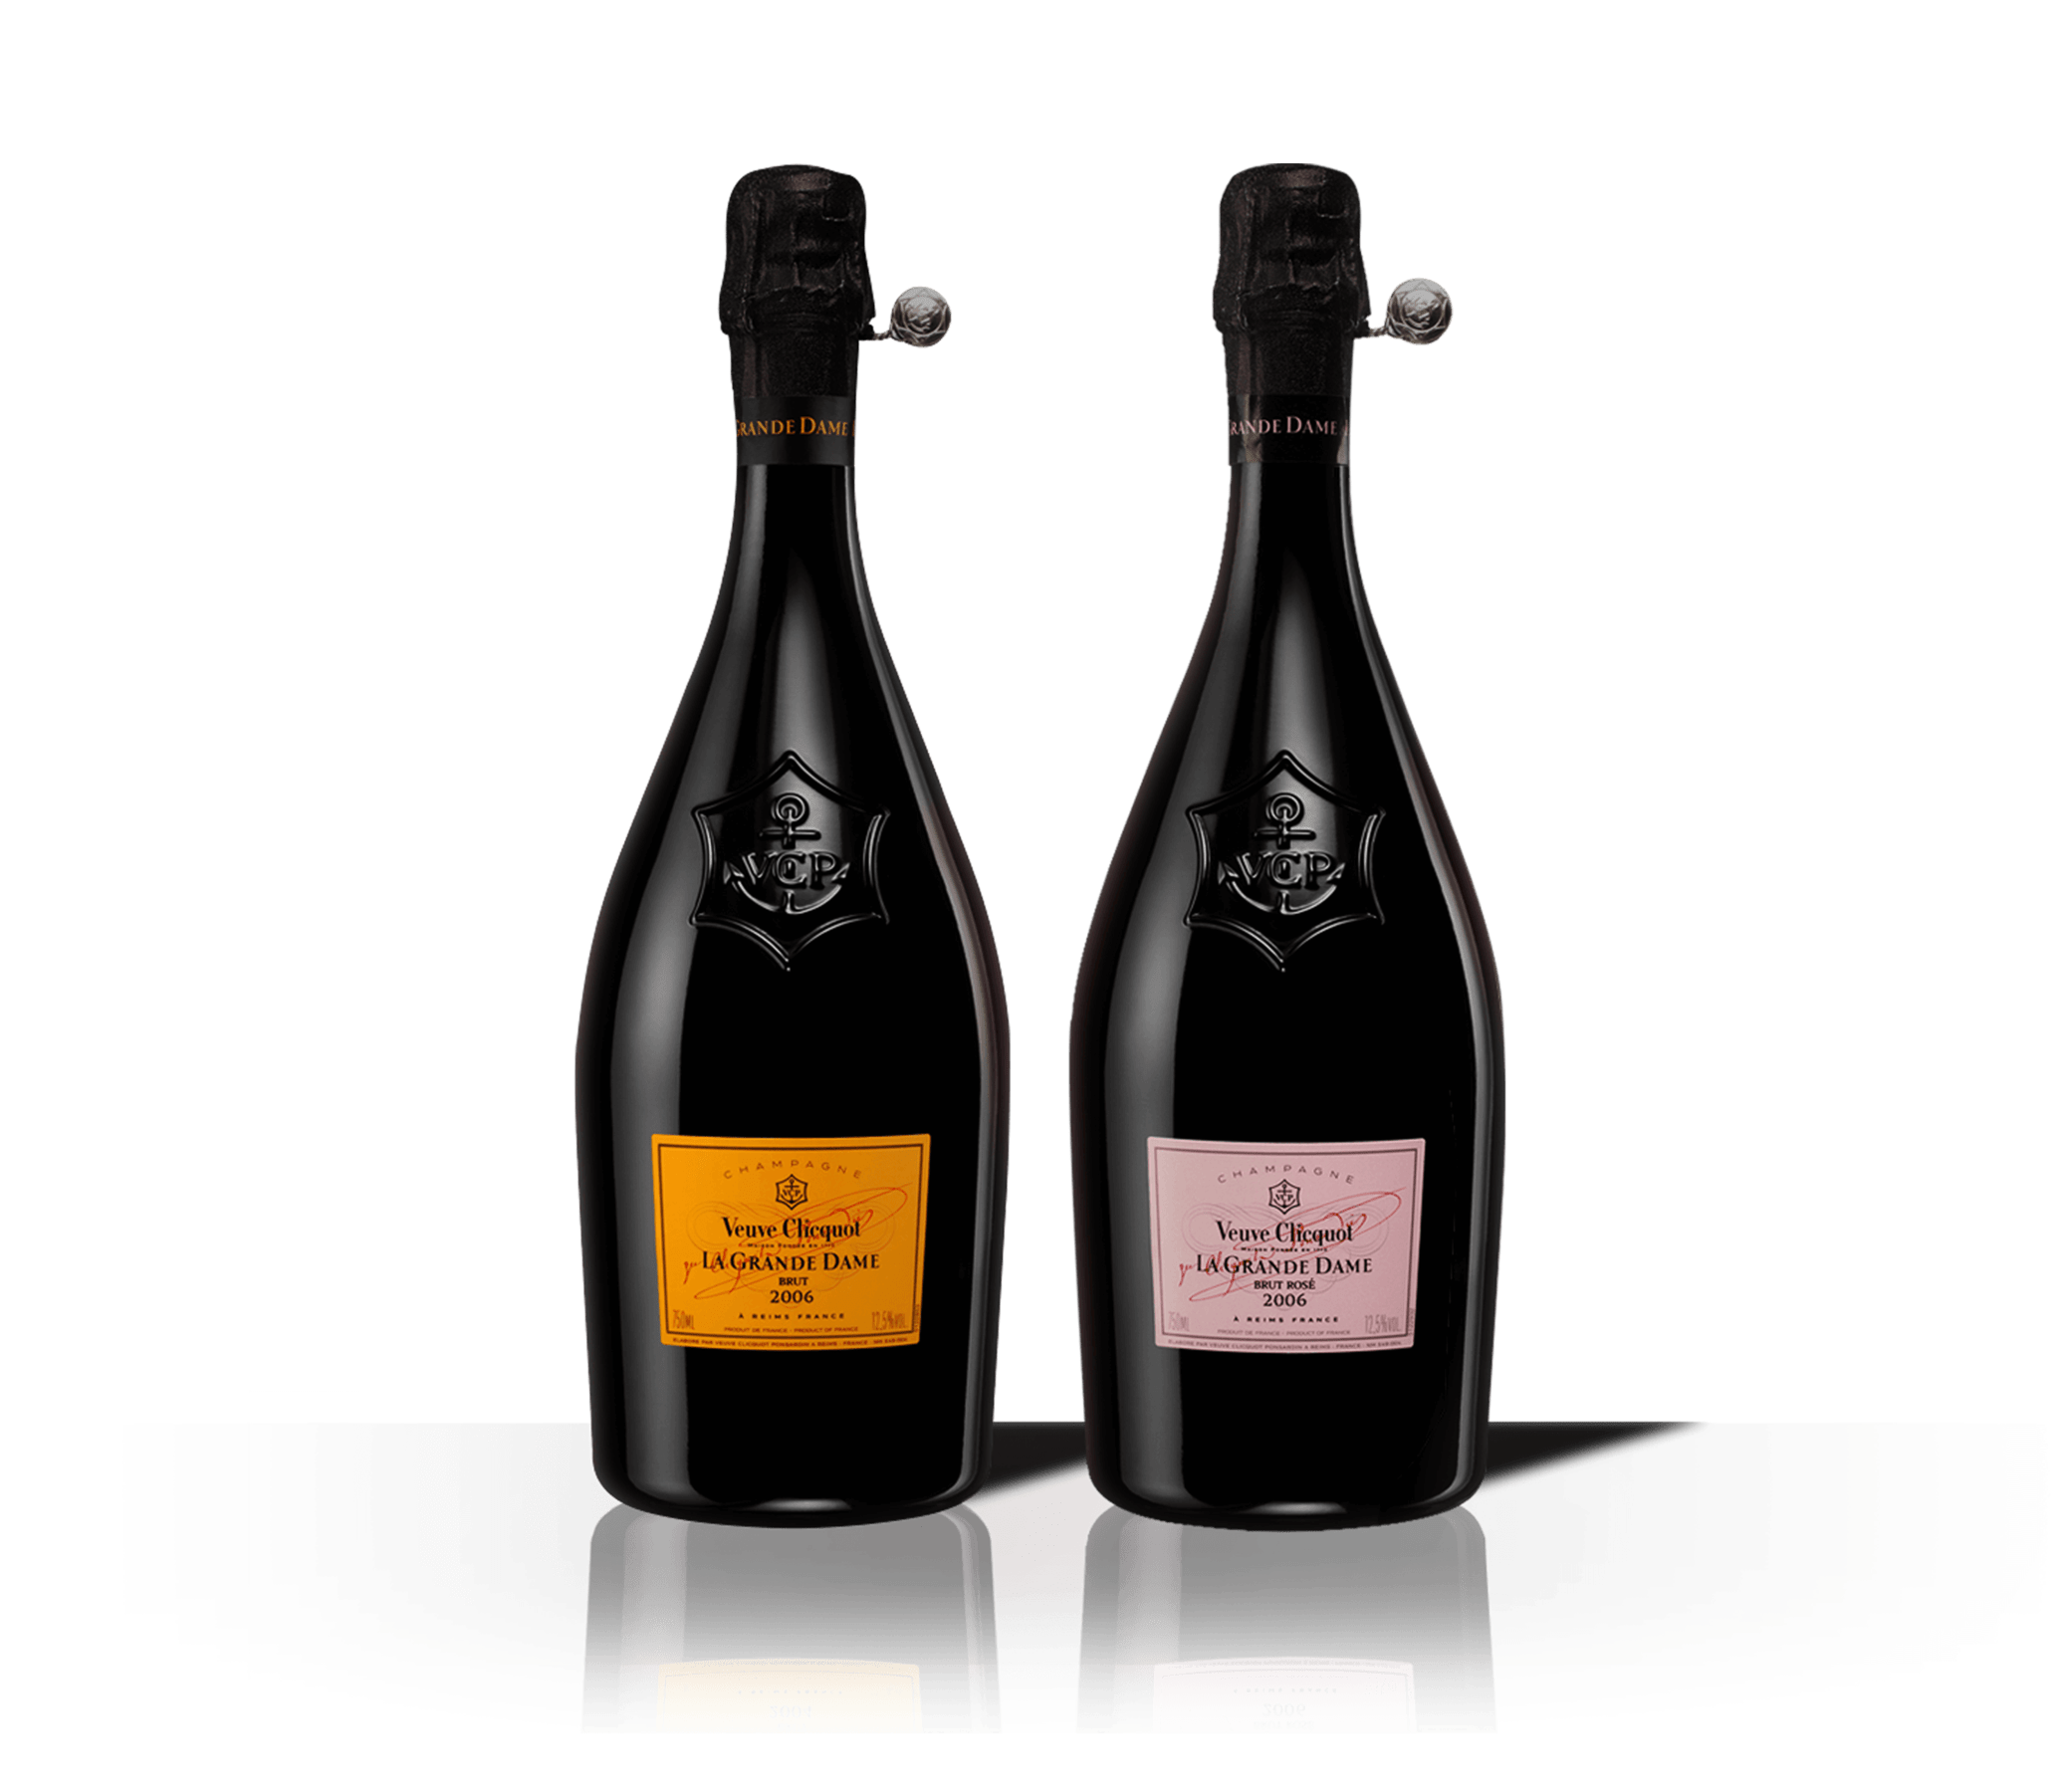 Bottiglie Veuve Clicquot Champagne La Grande Dame 2008